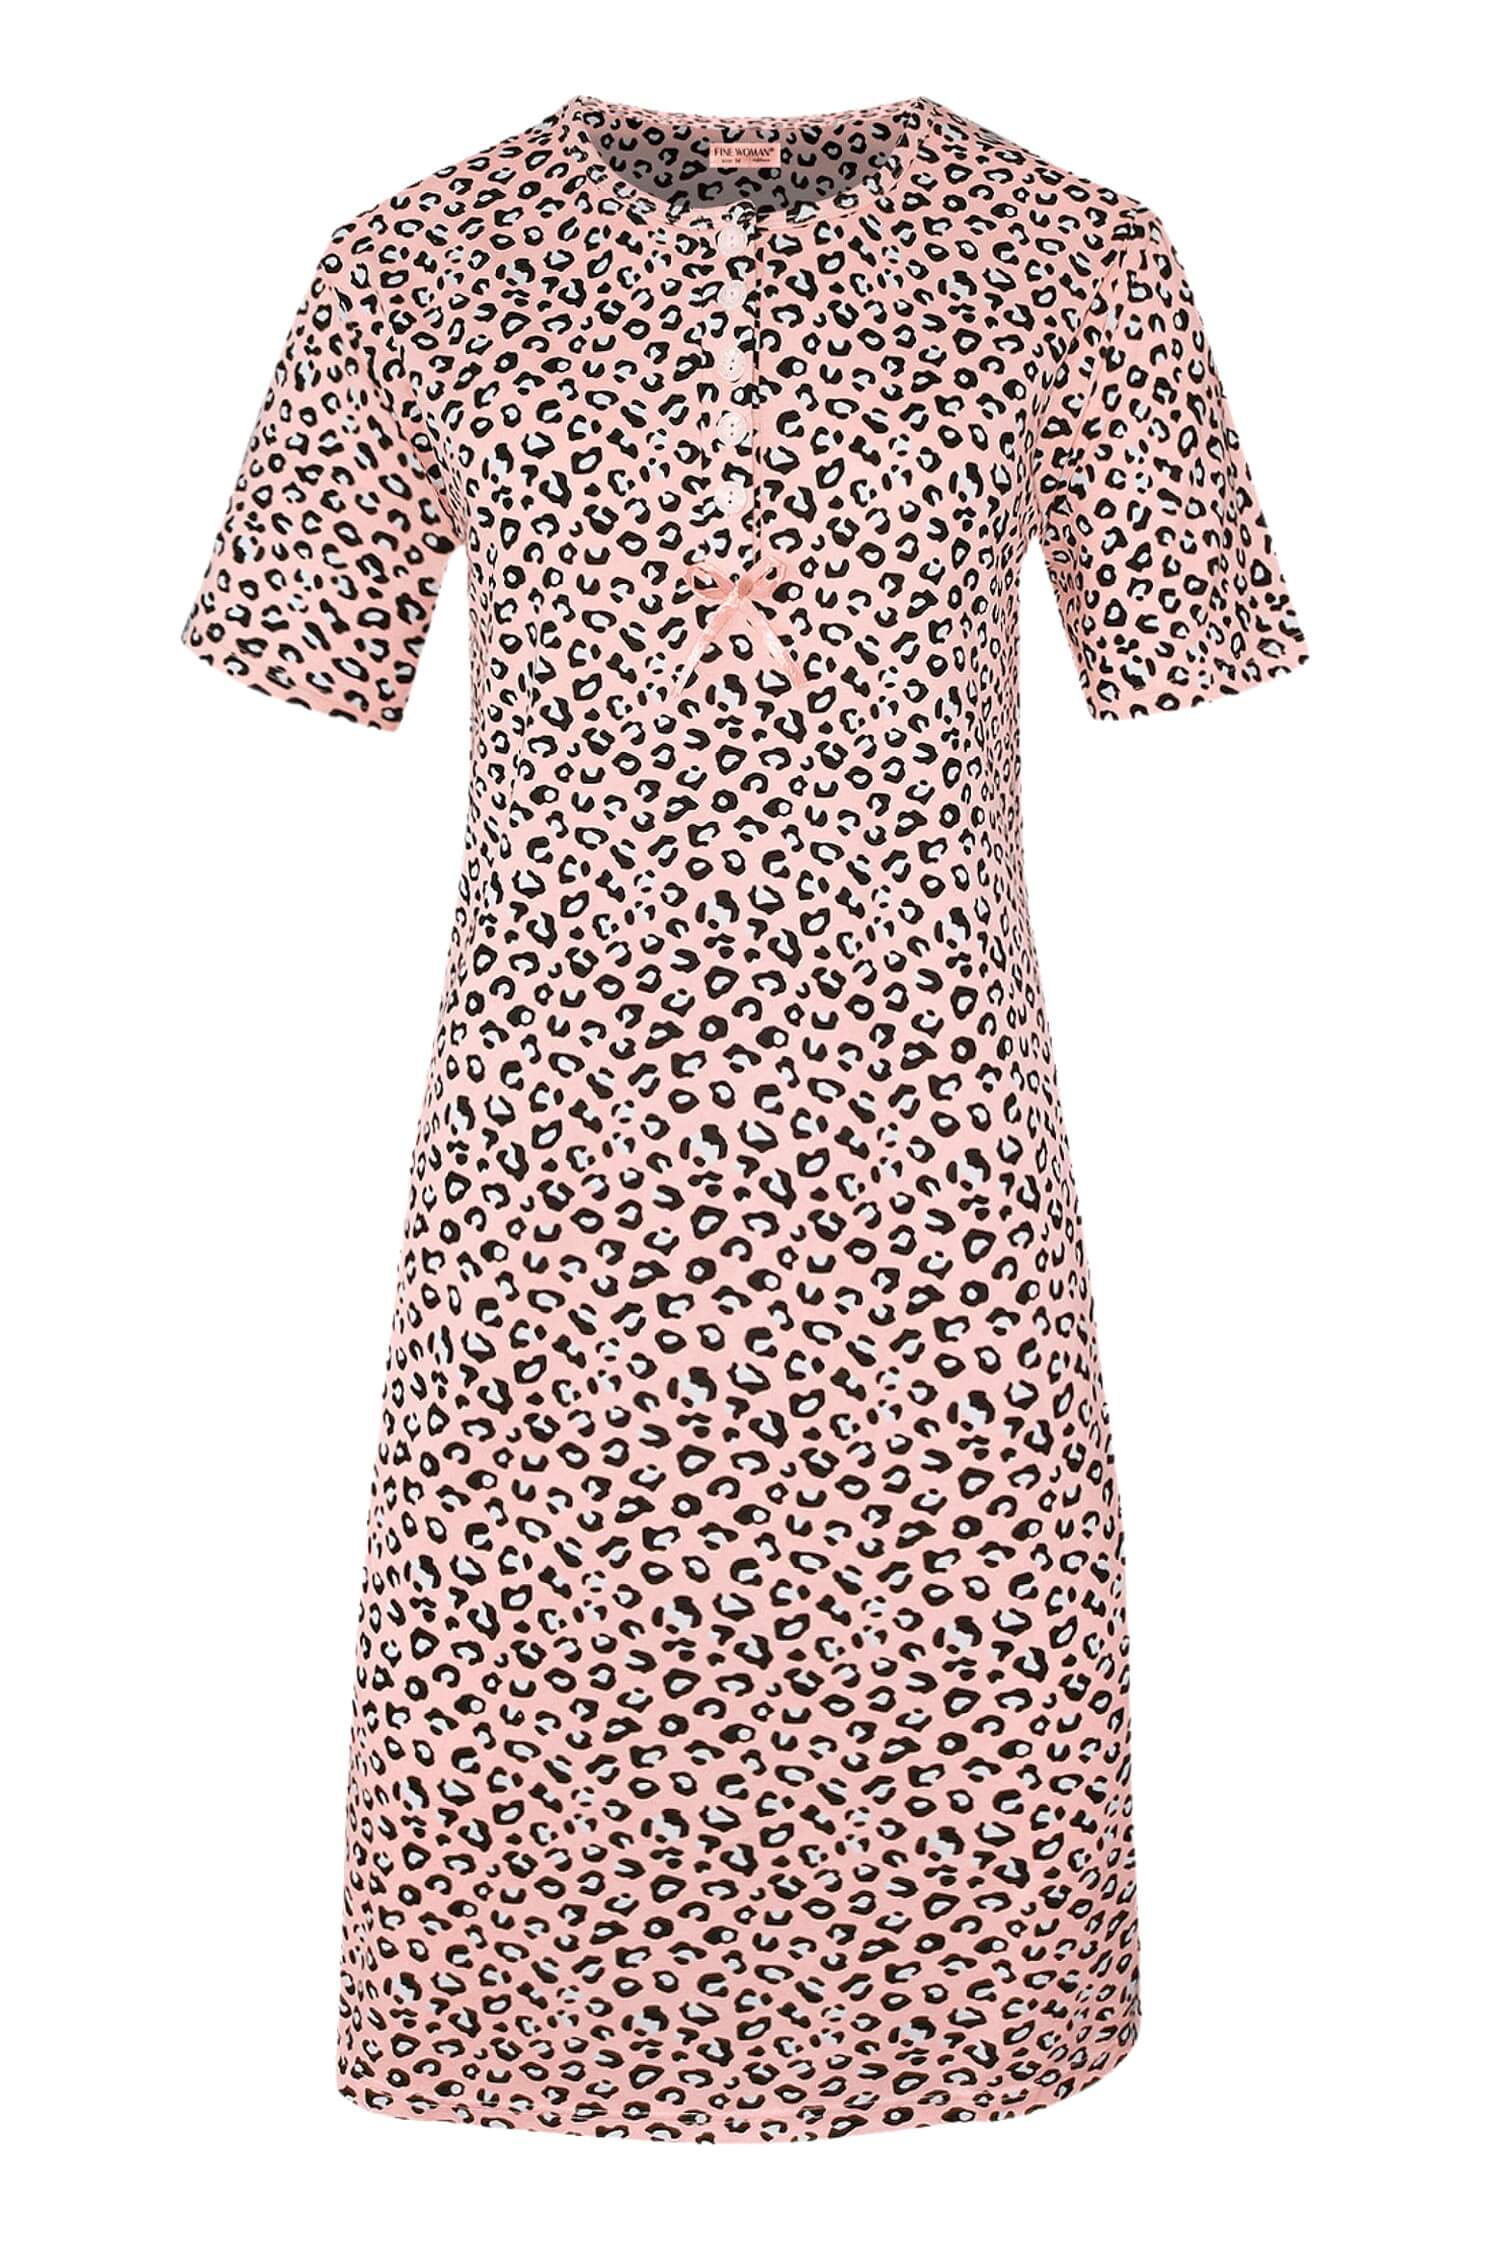 Katarina dámská noční košile leopardí vzor 6529 XXL světle růžová